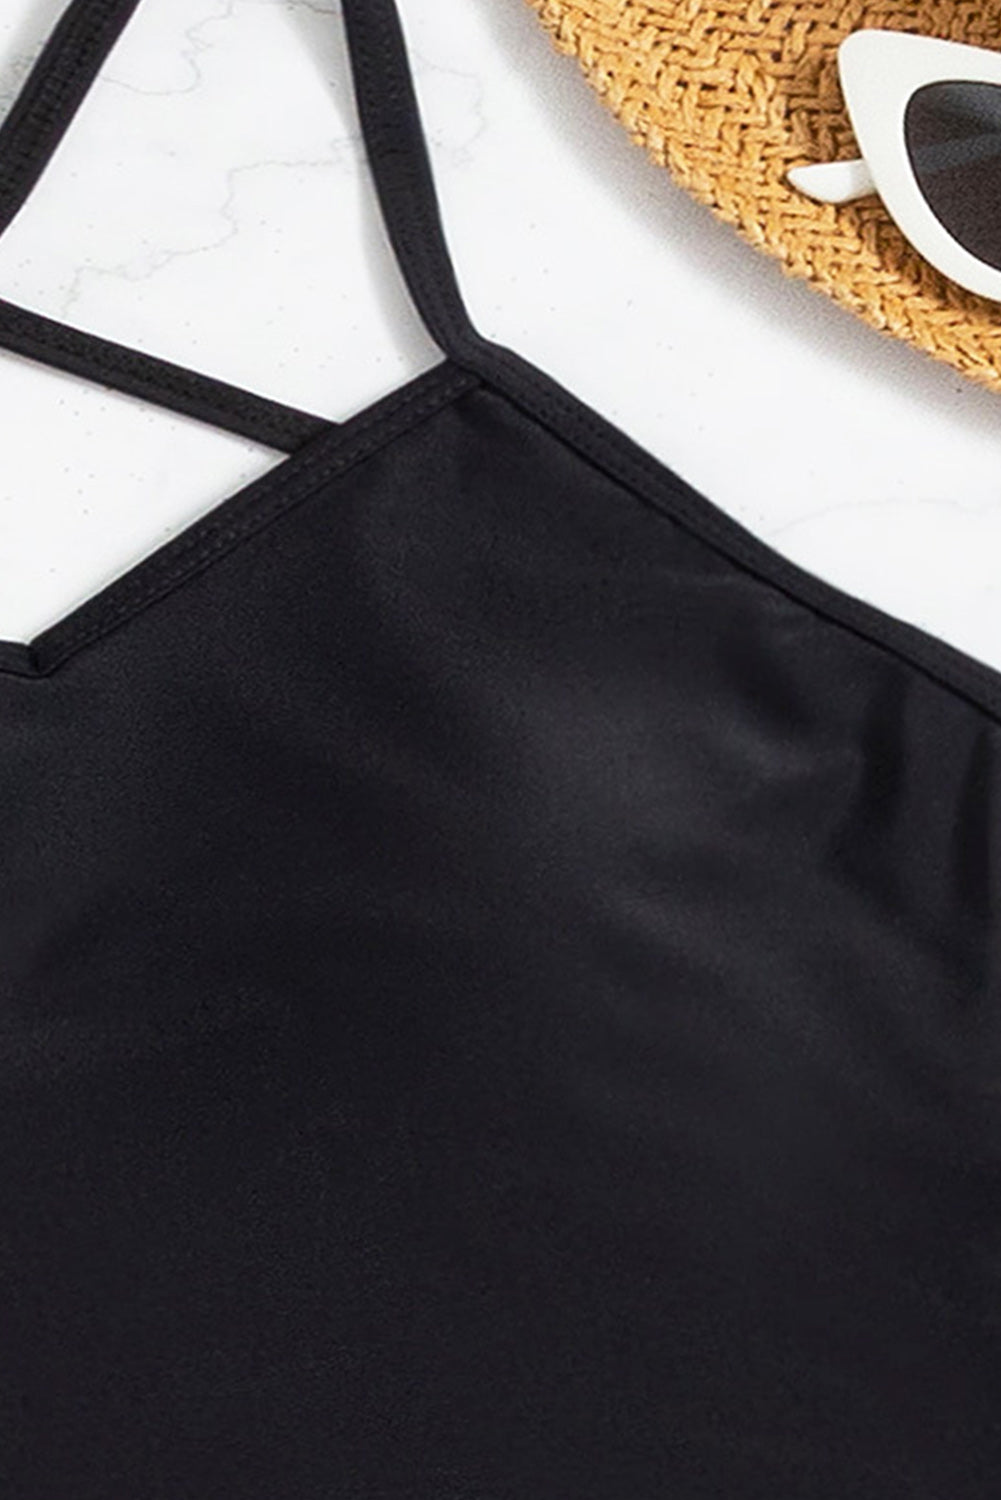 Crni jednodijelni kupaći kostim Criss Cross bez leđa sa sarongom